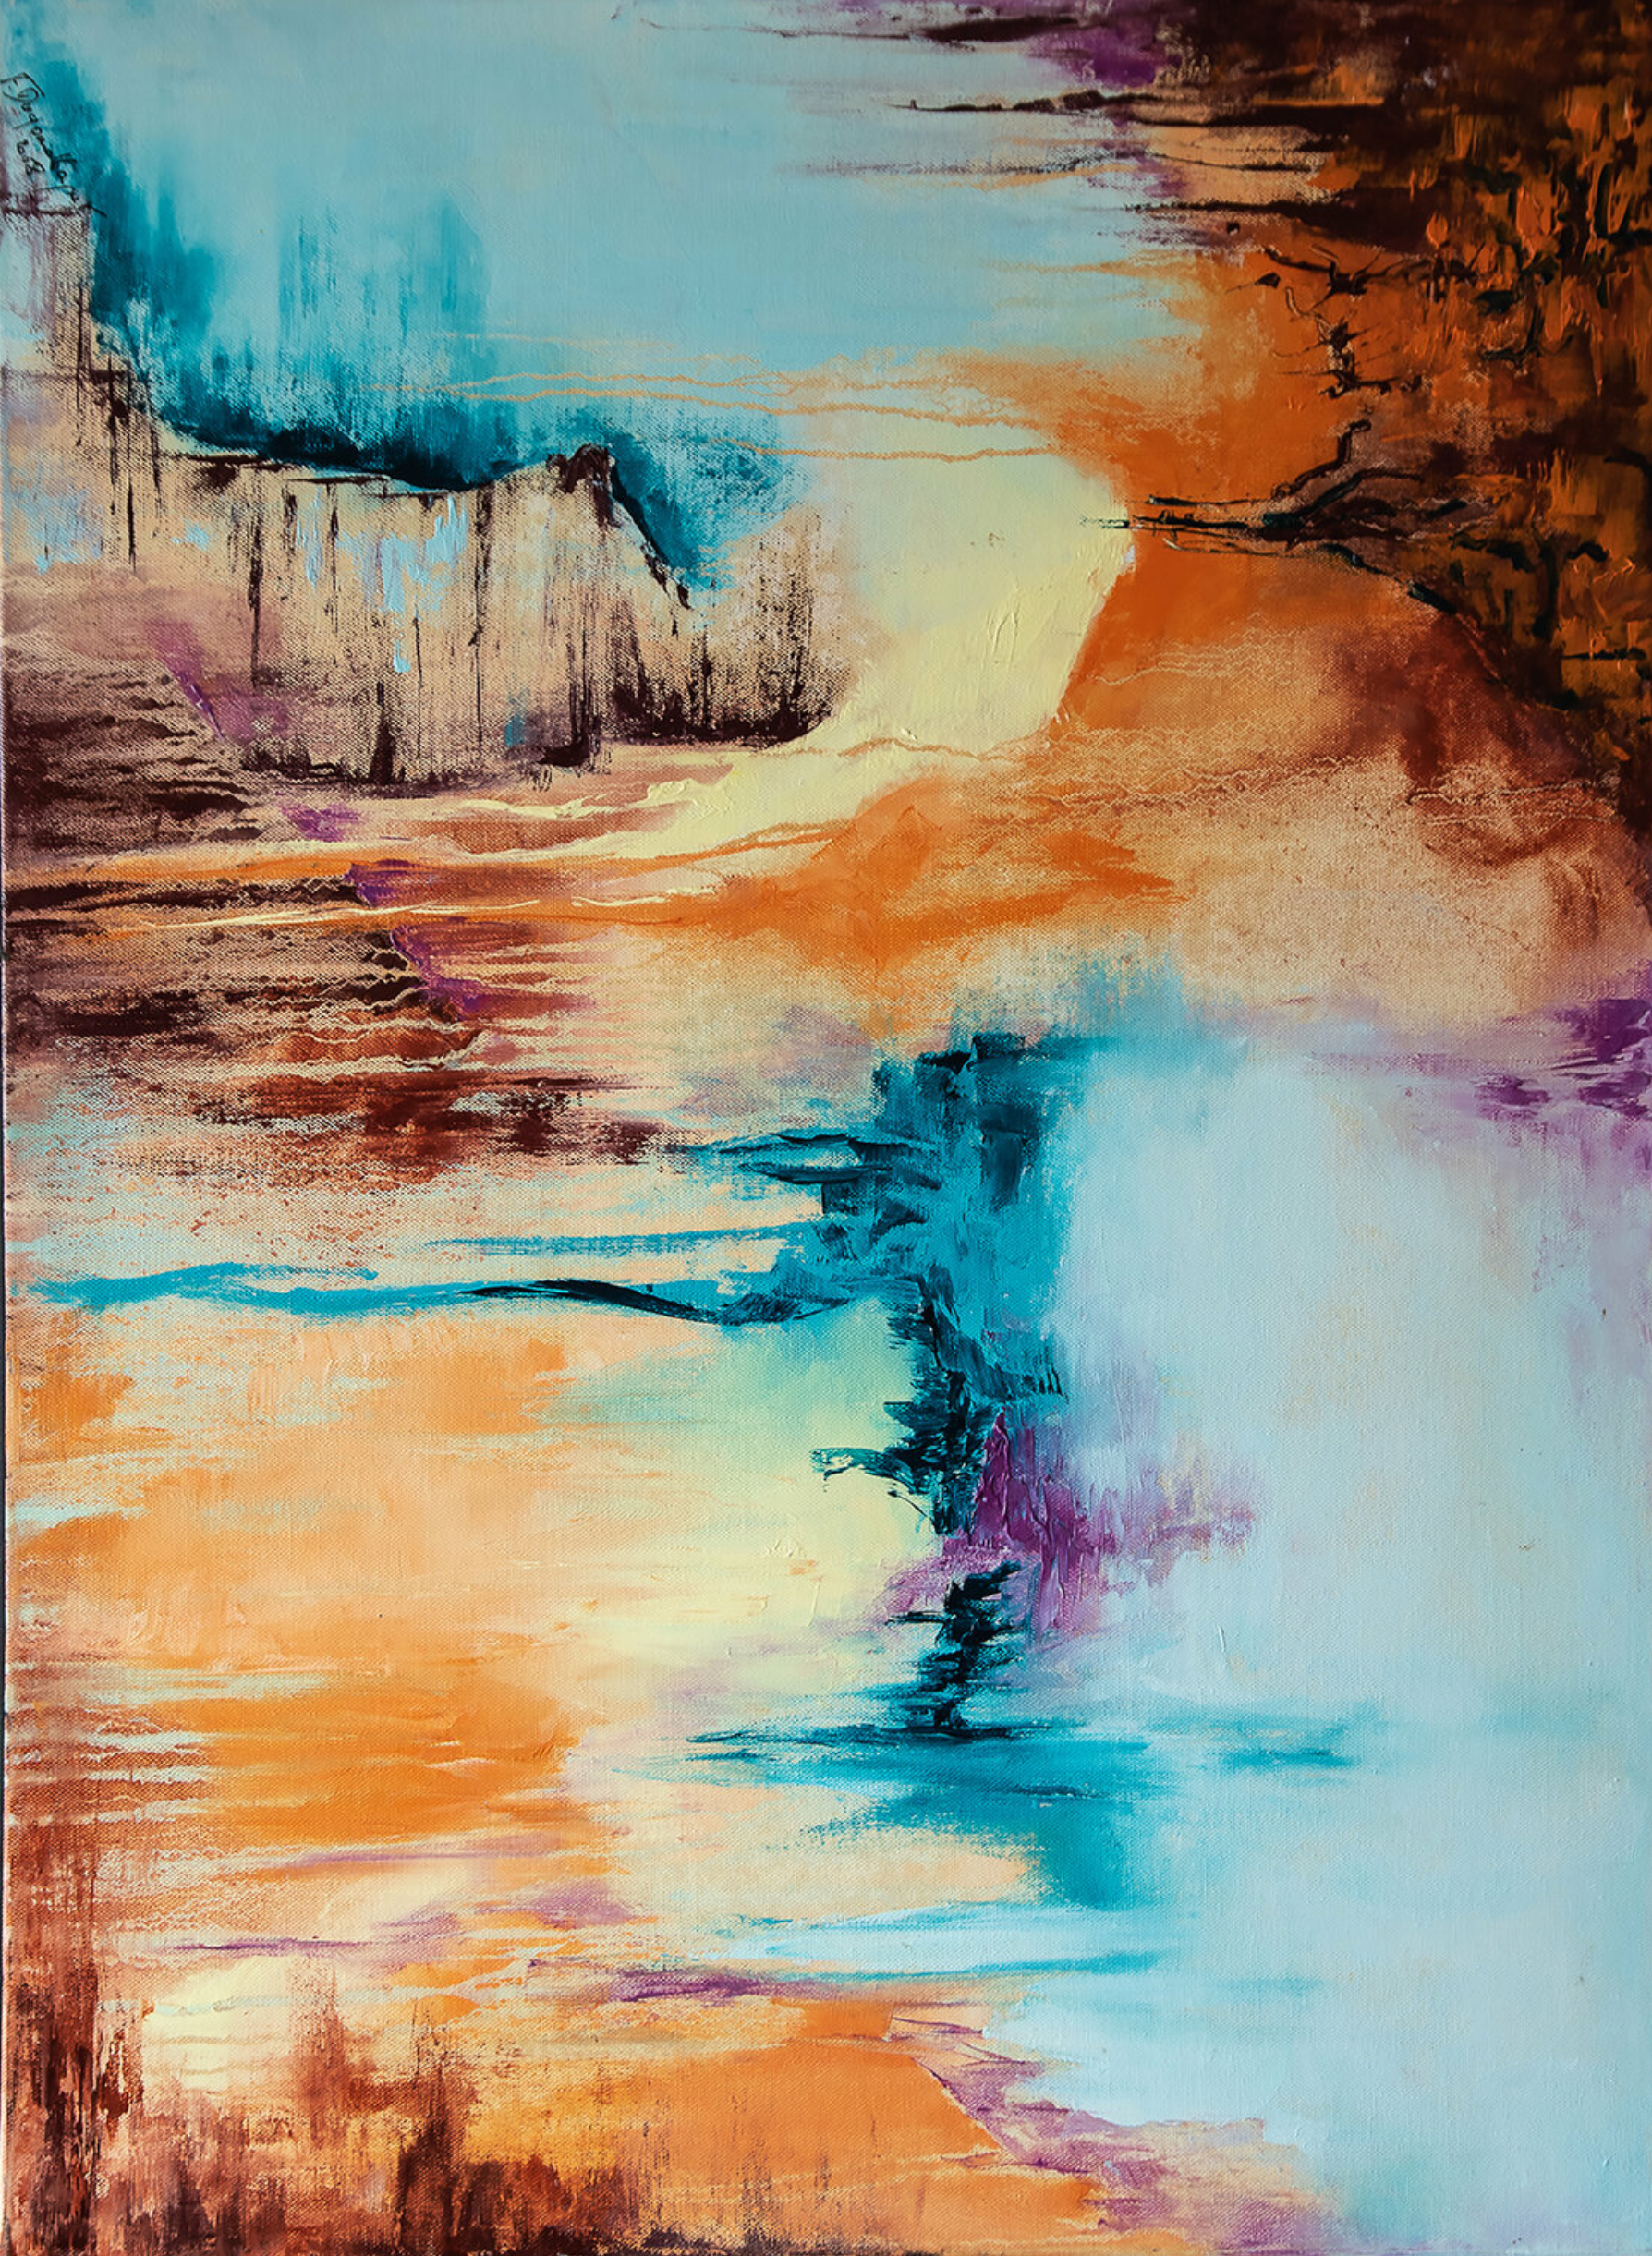 弗朗索瓦丝-杜古德-卡普特的 "Entre-Soi "抽象画展示了大地、海洋、天空和热的色彩中的景观抽象、缝隙方面和水滴 痛苦和宁静在这幅画中结合起来，创造了一个旅行邀请。